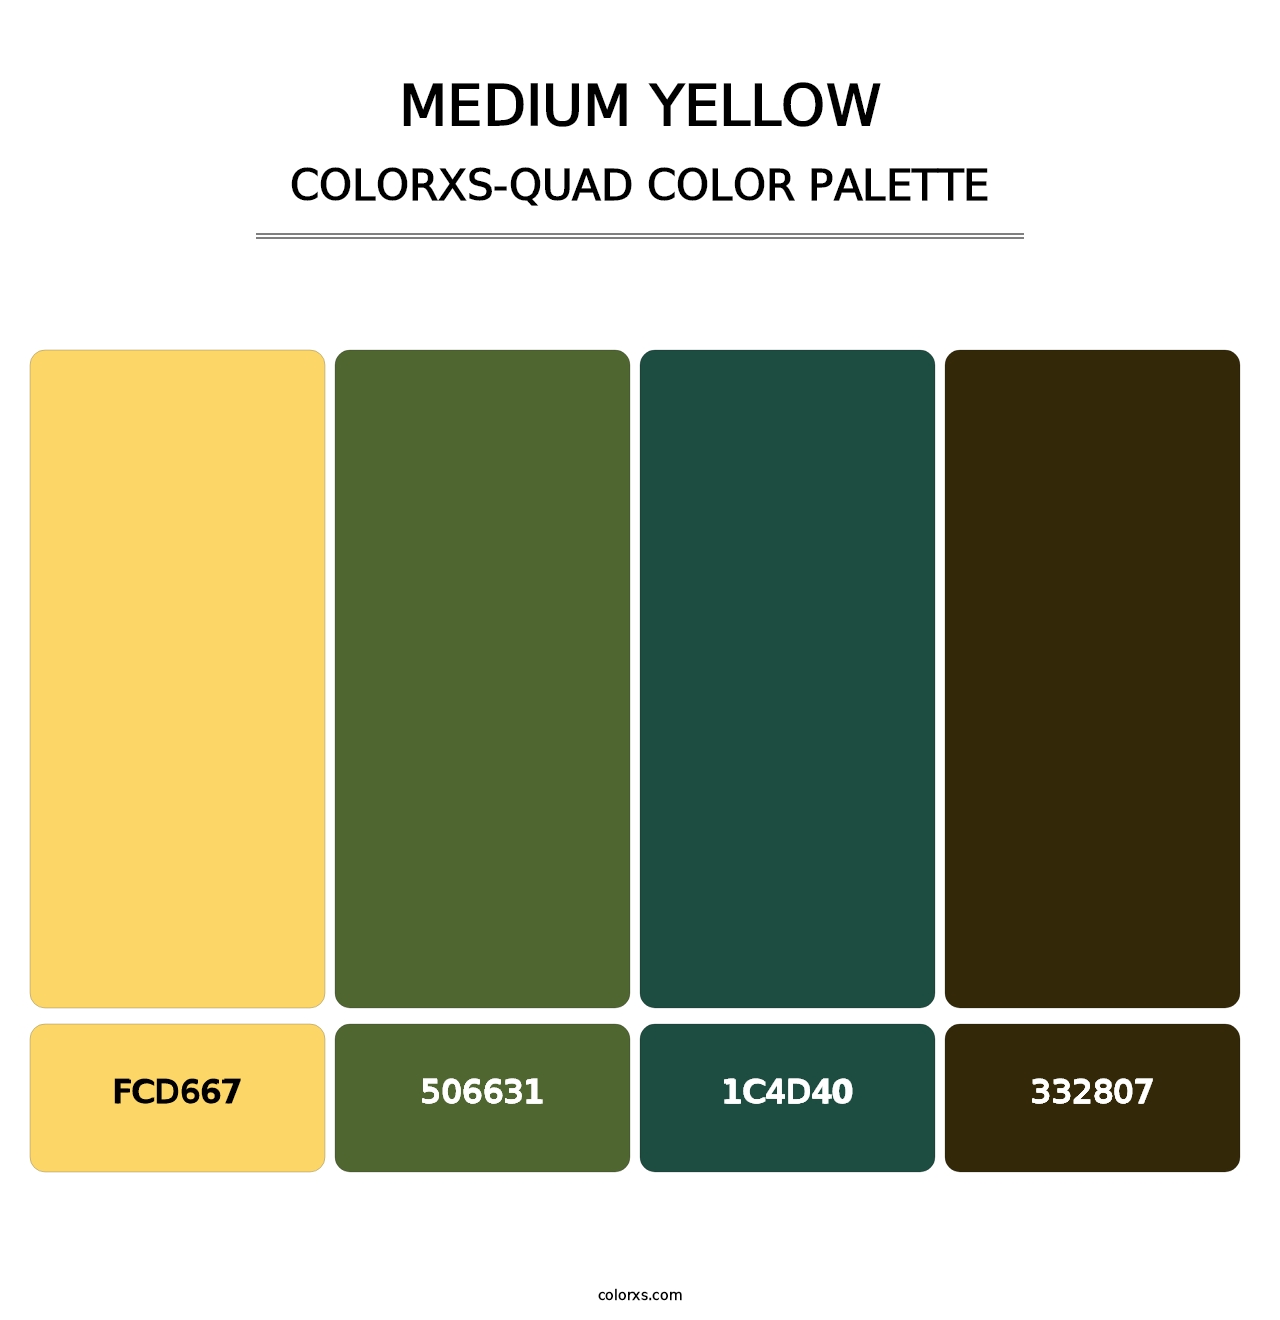 Medium Yellow - Colorxs Quad Palette